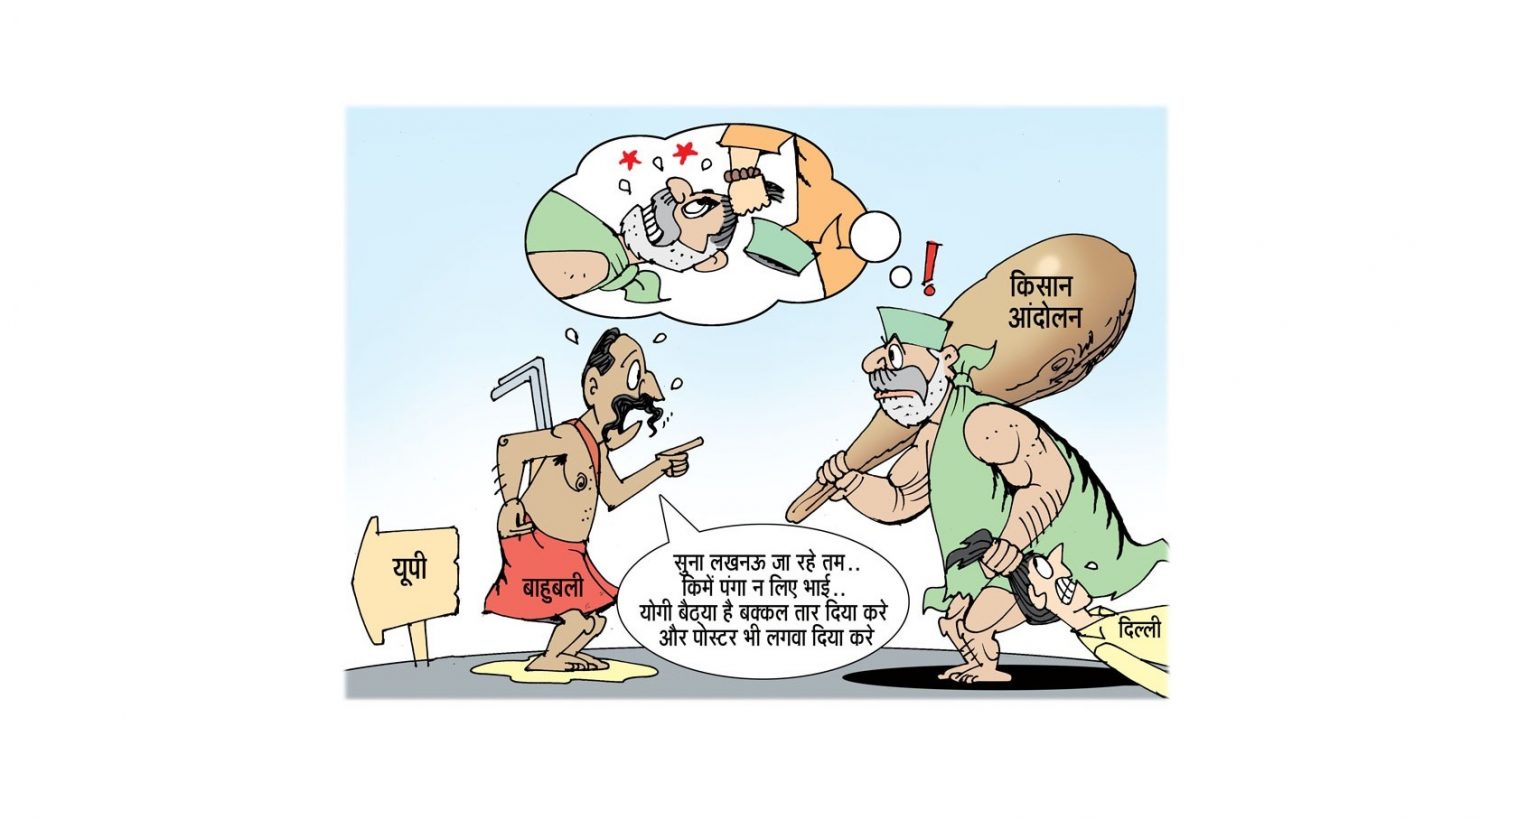 اتر پردیش بی جے پی  کے ٹوئٹر ہینڈل پر پوسٹ کیا گیا کارٹون۔ (فوٹو بہ شکریہ: ٹوئٹر/@BJP4UP)